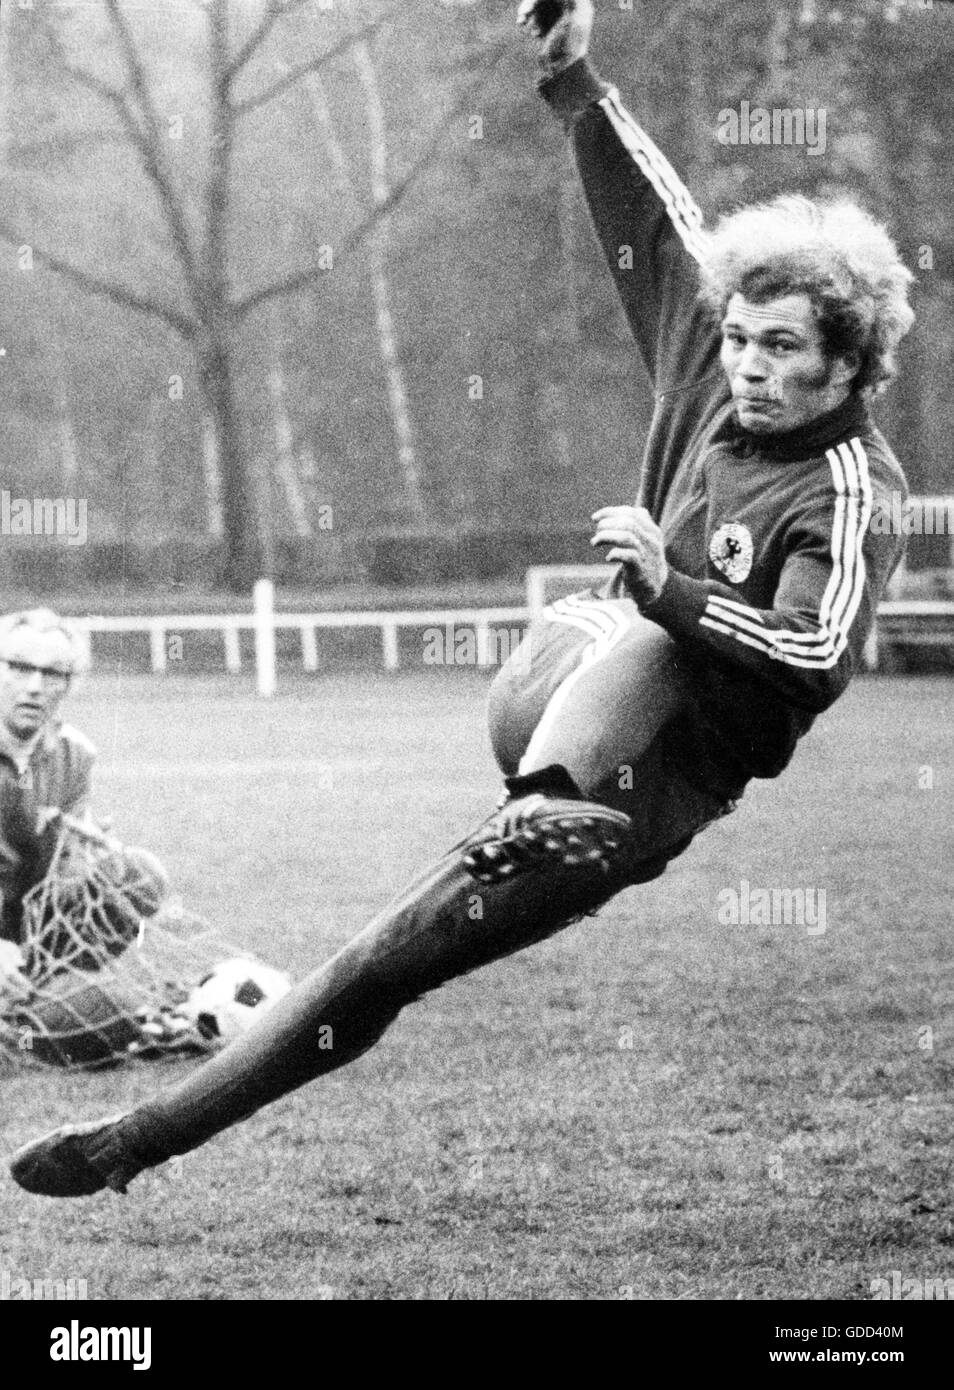 Hoeness, Ulrich "Uli', * 5.1.1952, atleta tedesco, funzionario di calcio e imprenditore, come giocatore per il team nazionale tedesco, durante il corso di formazione, la preparazione per il Campionato Europeo 1972 a piena lunghezza del 25.3.1972, Foto Stock